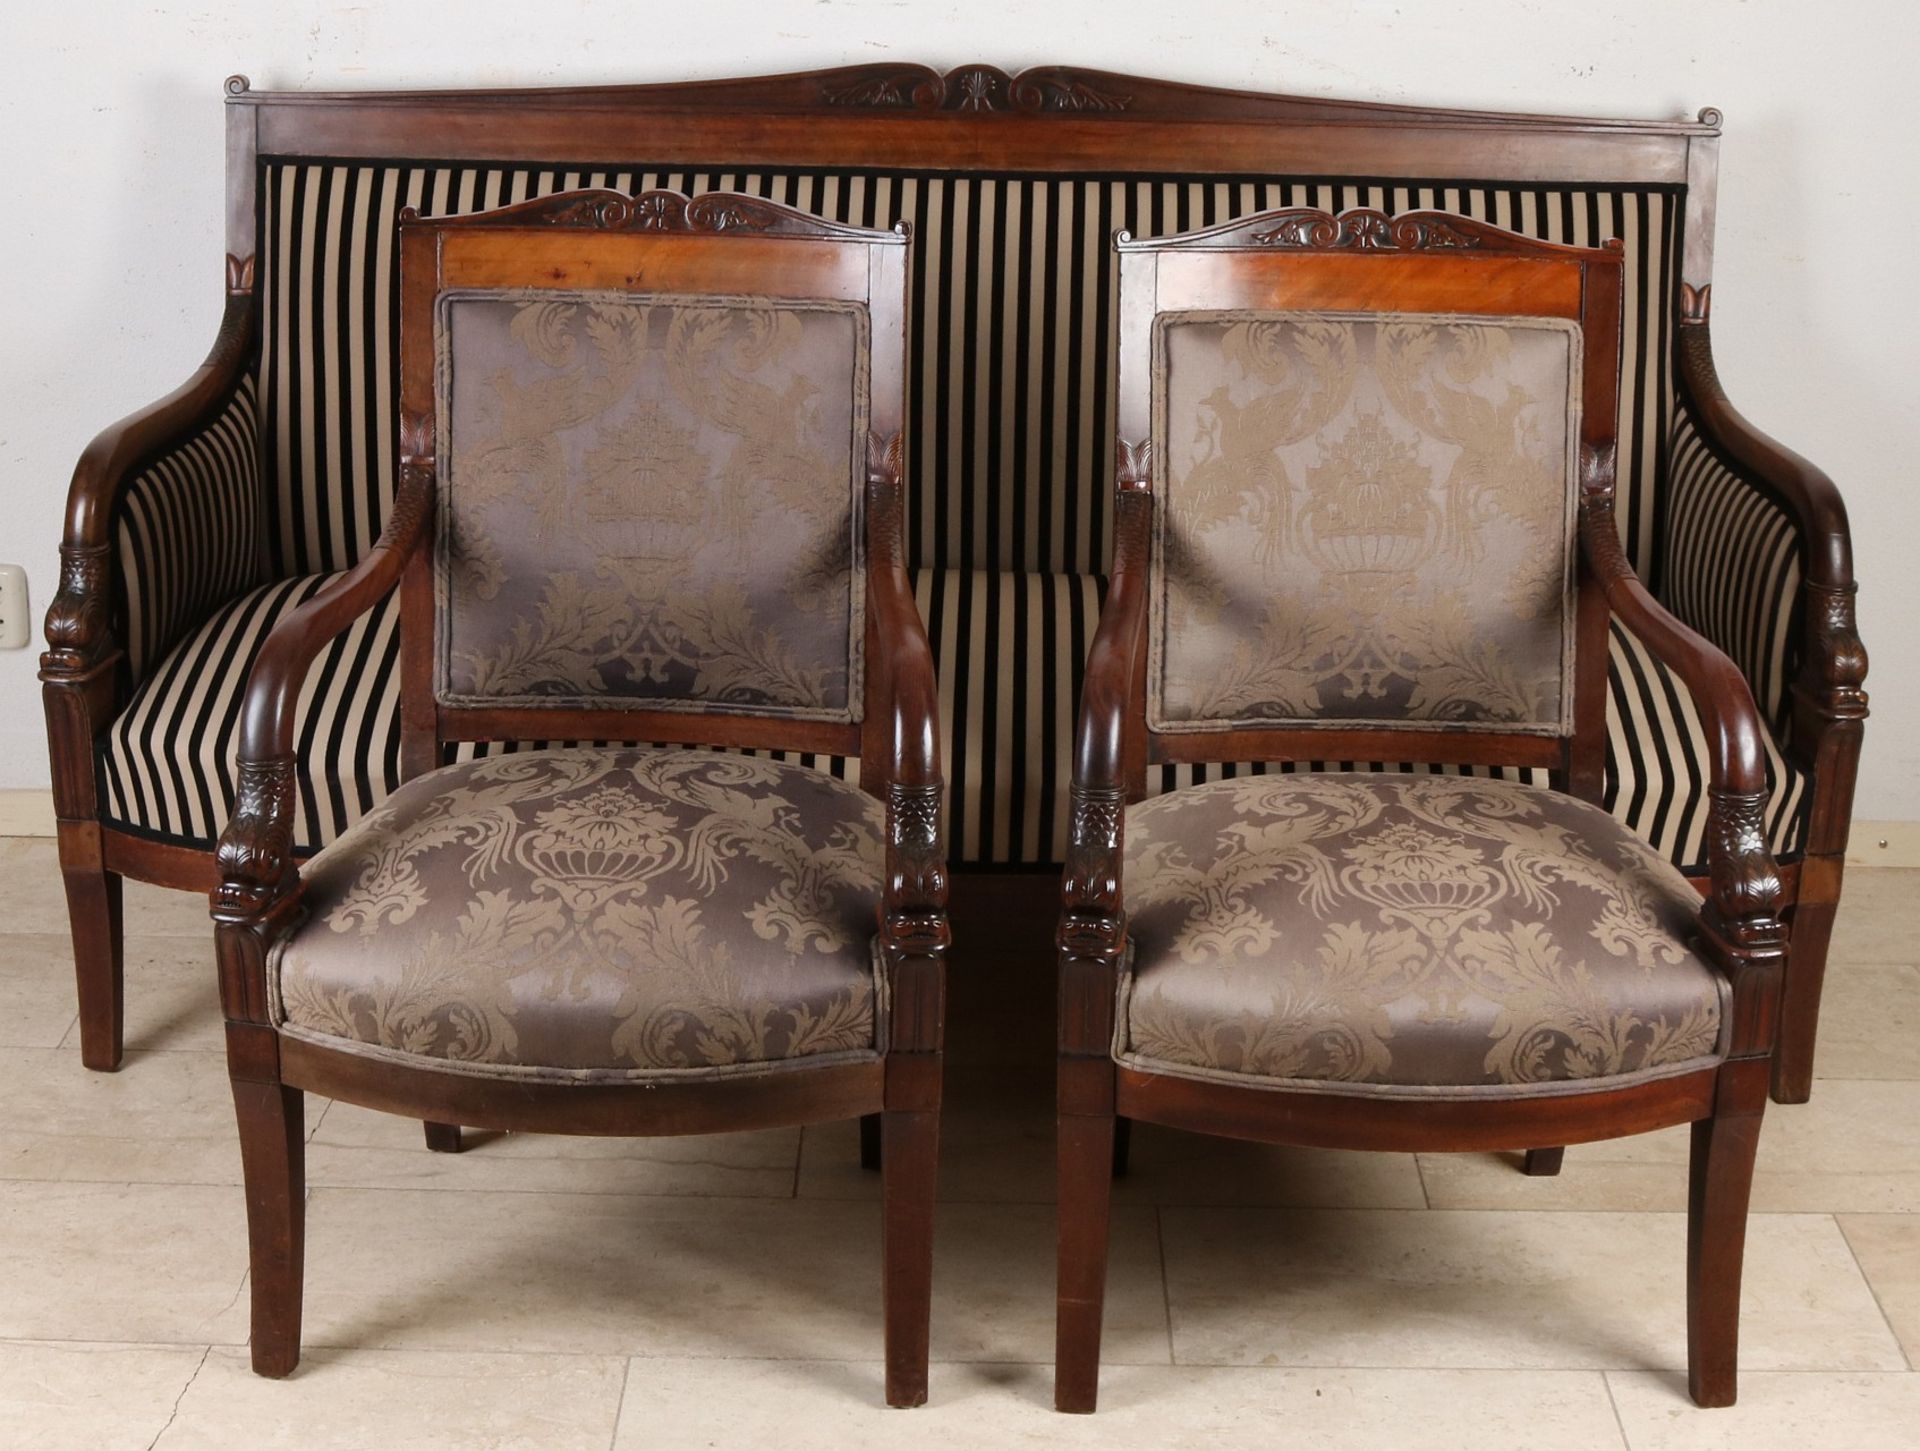 Mahagoni-Sofa aus dem 19. Jahrhundert mit zwei Sesseln, Delfinköpfen und guter Samtpolsterung. Ca